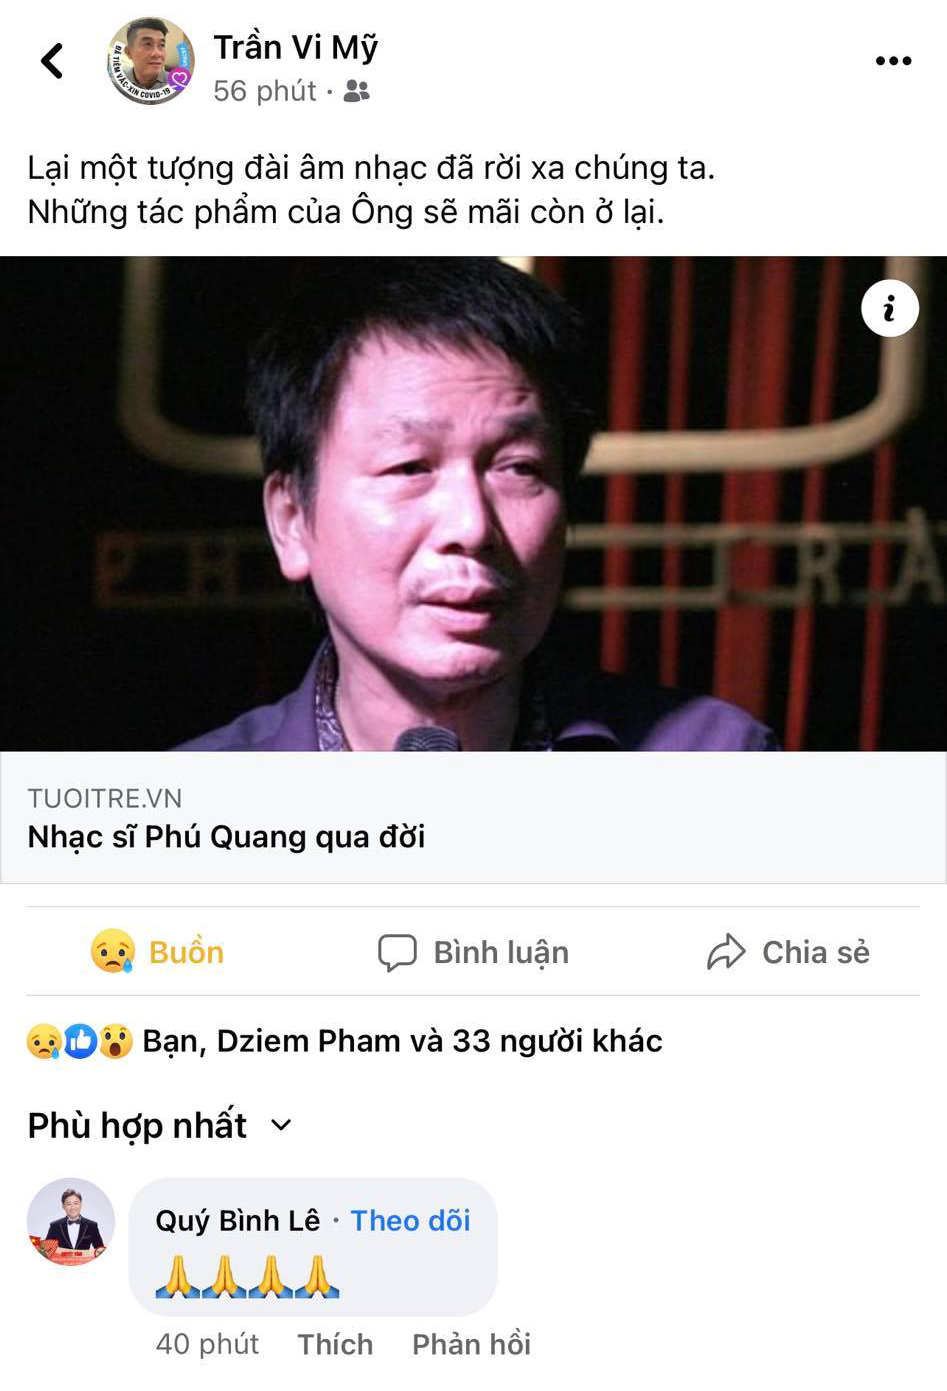  
Diễn viên Quý Bình, đạo diễn Trần Vi Mỹ, quản lý Phi Nhung đều buồn lòng trước sự ra đi của nam nhạc sĩ. (Ảnh: Chụp màn hình FB Trần Vi Vỹ) - Tin sao Viet - Tin tuc sao Viet - Scandal sao Viet - Tin tuc cua Sao - Tin cua Sao